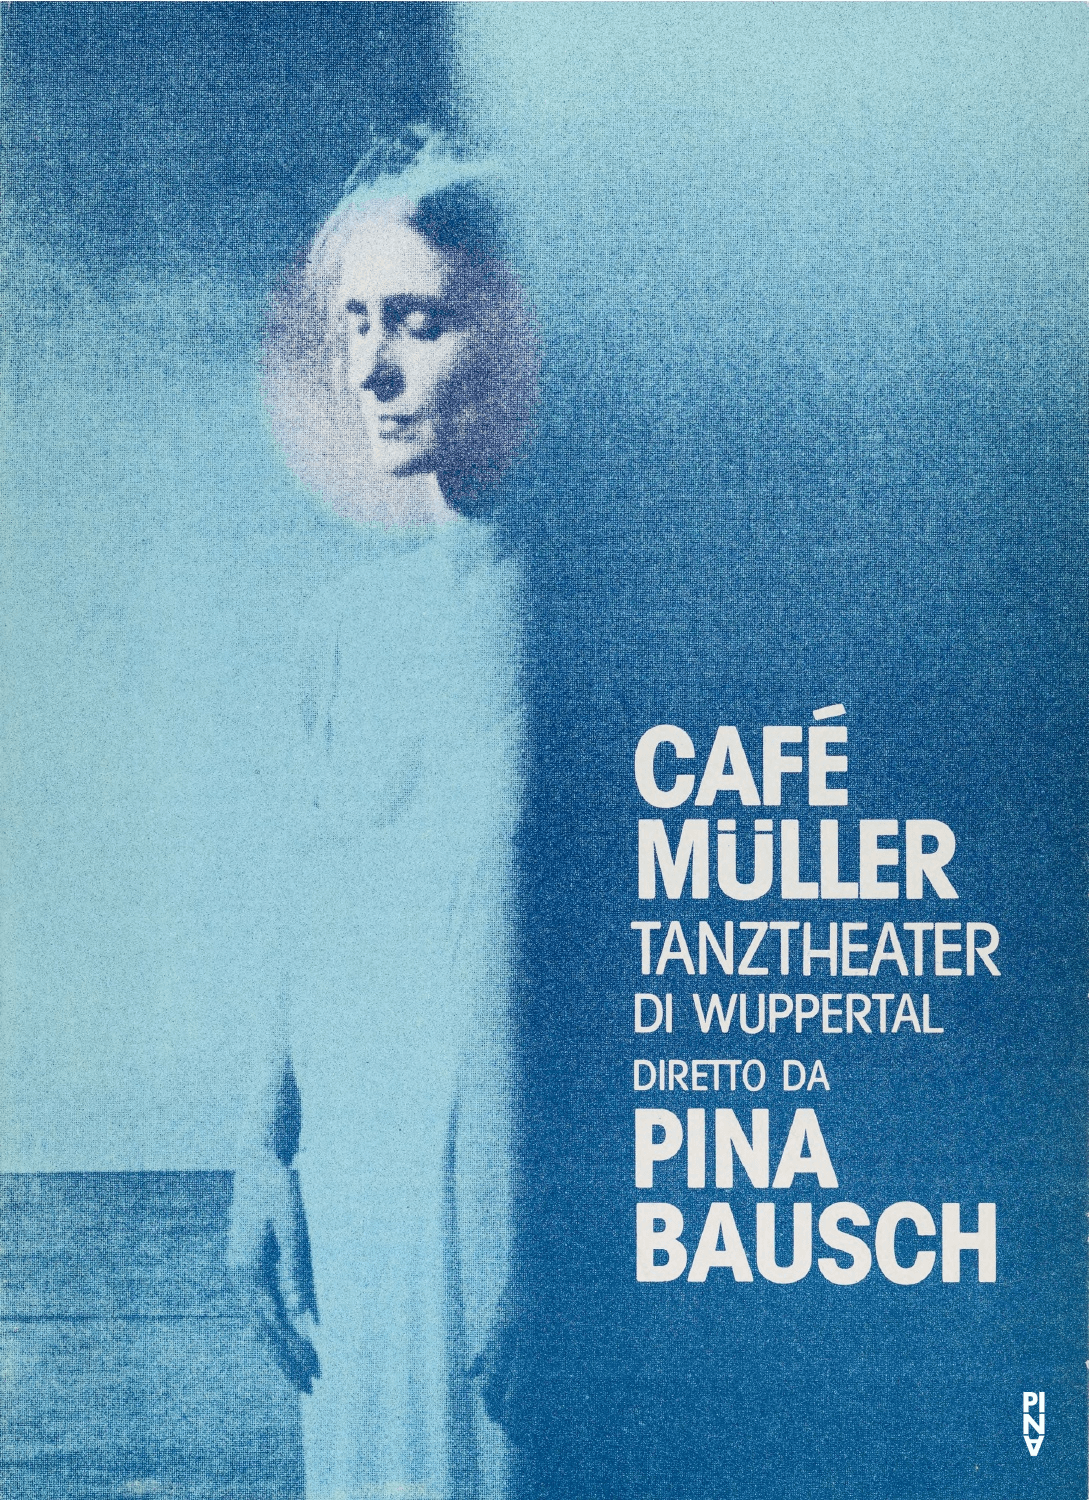 Programmheft zu „Café Müller“ von Pina Bausch mit Tanztheater Wuppertal in Sassari, 22.02.1984–23.02.1984